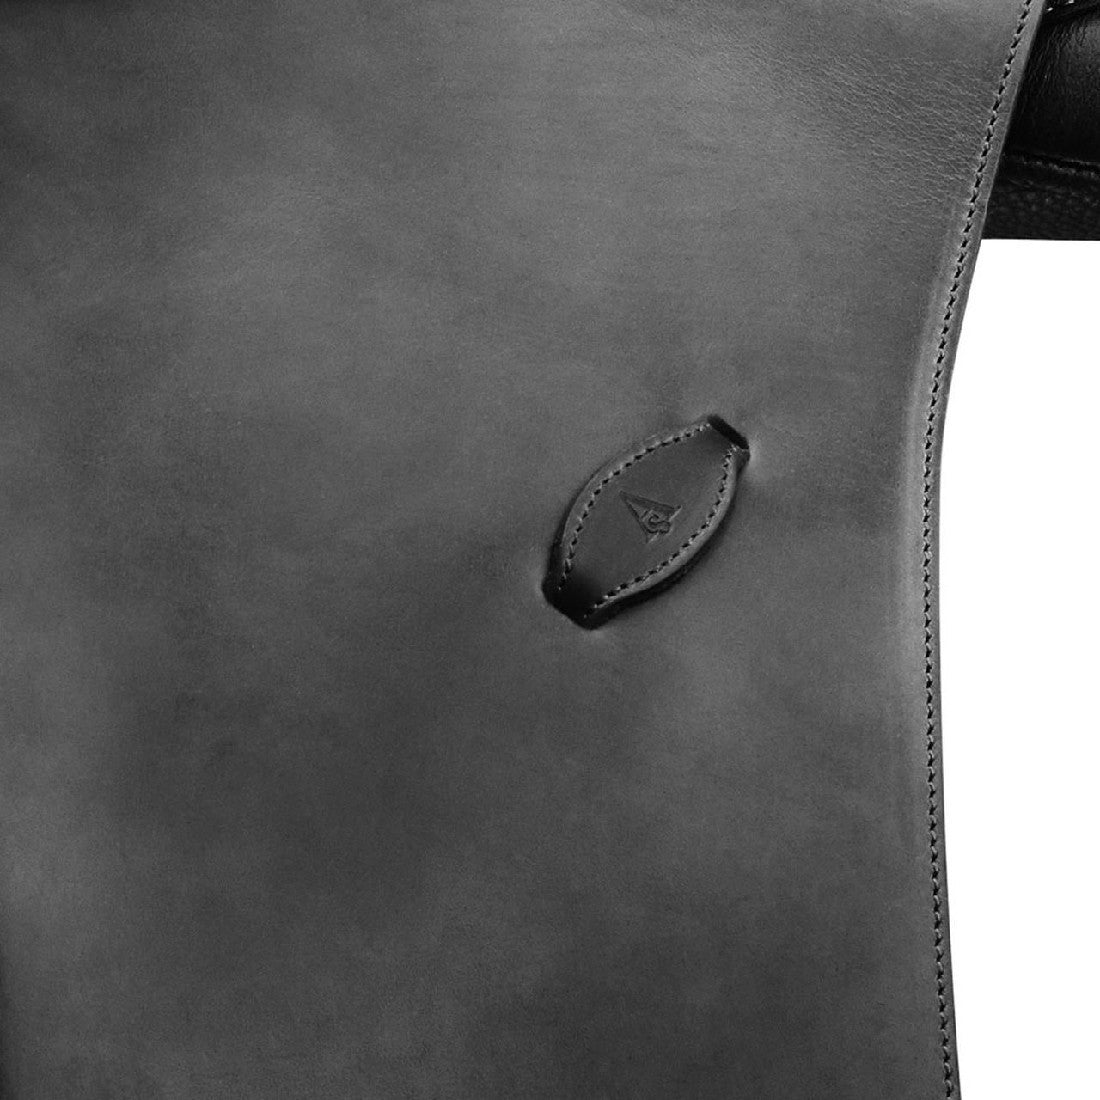 Close-up of Arena Saddles leather logo on black saddle surface.